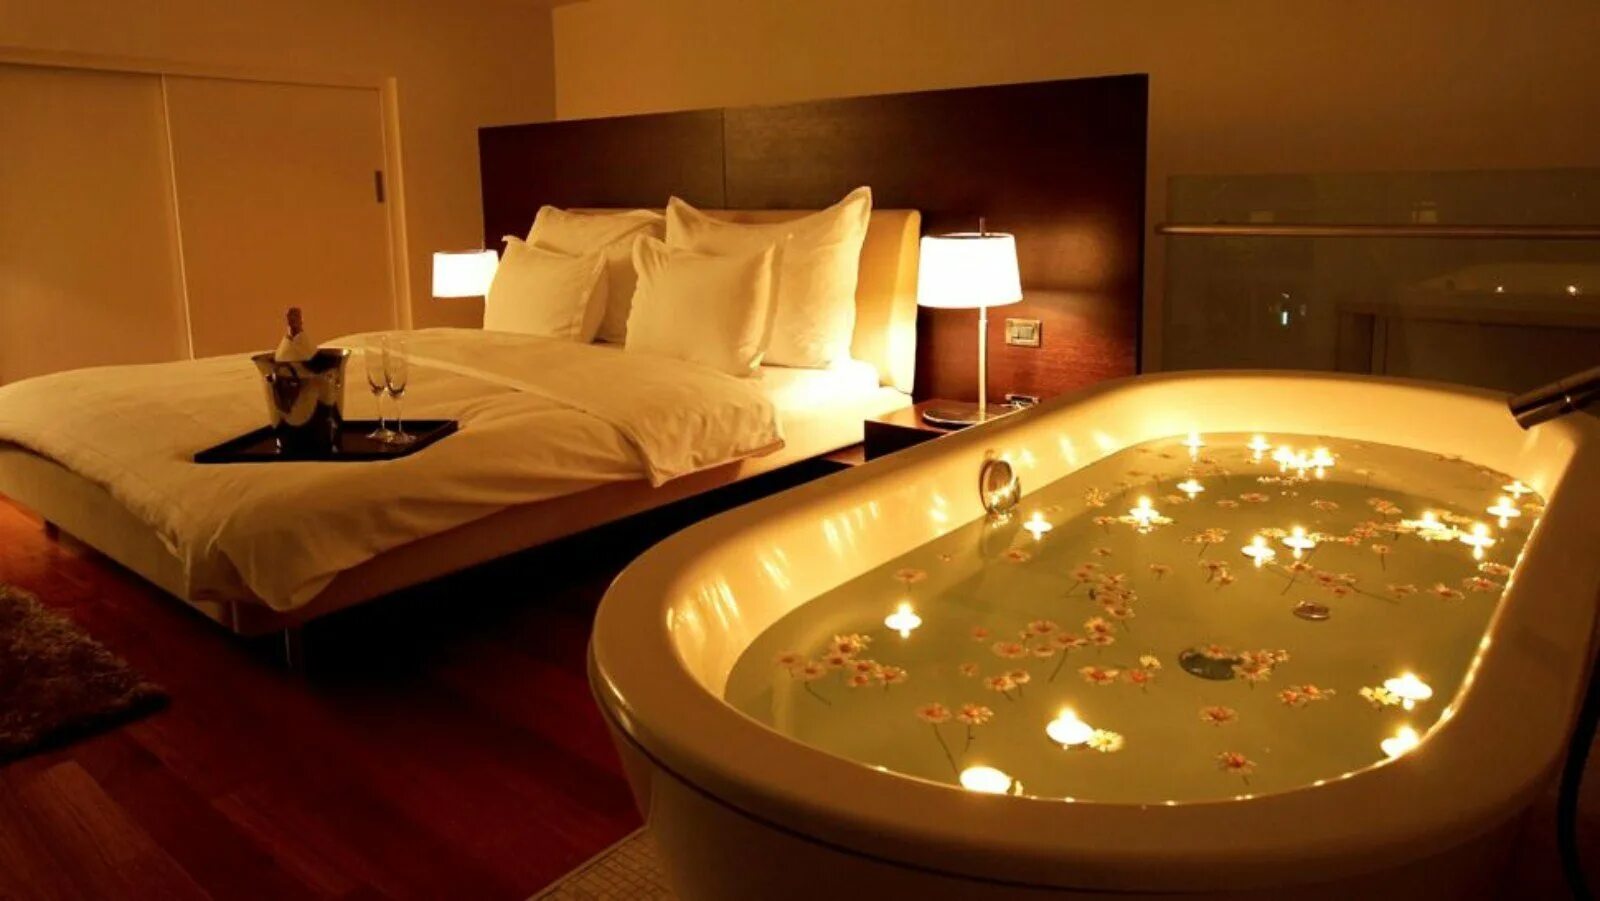 Можно ли заниматься интимной жизнью при свечах. Джакузи в спальне. Комната с джакузи. Огромная кровать. Романтичная обстановка в комнате.